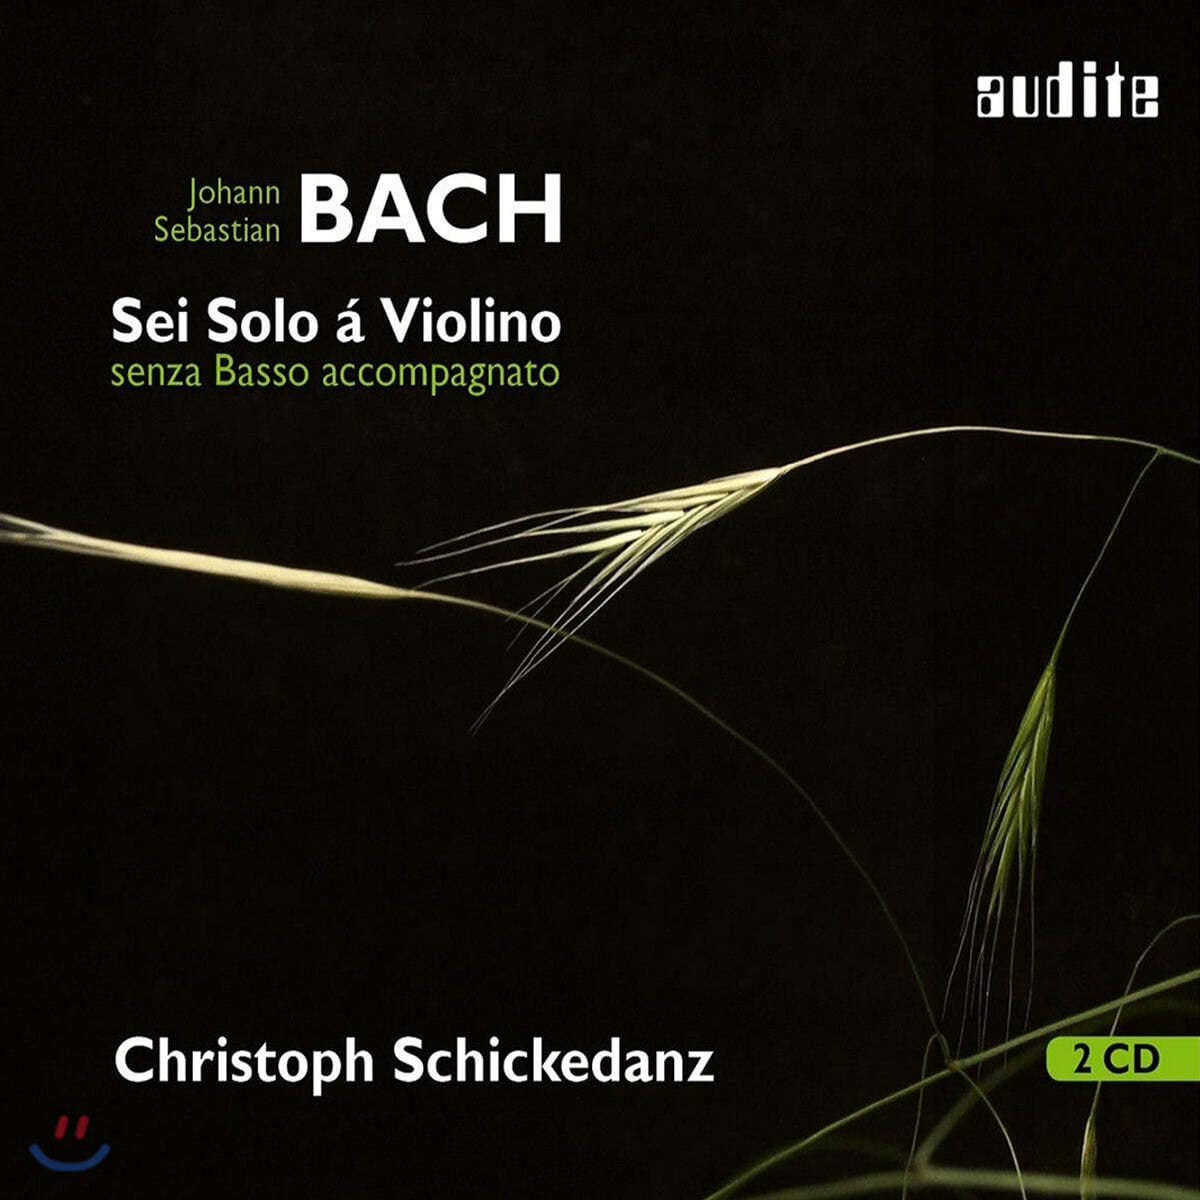 Christoph Schickedanz 바흐: 바이올린을 위한 소나타와 파르티타 전곡집 - 크리스토프 시케단츠 